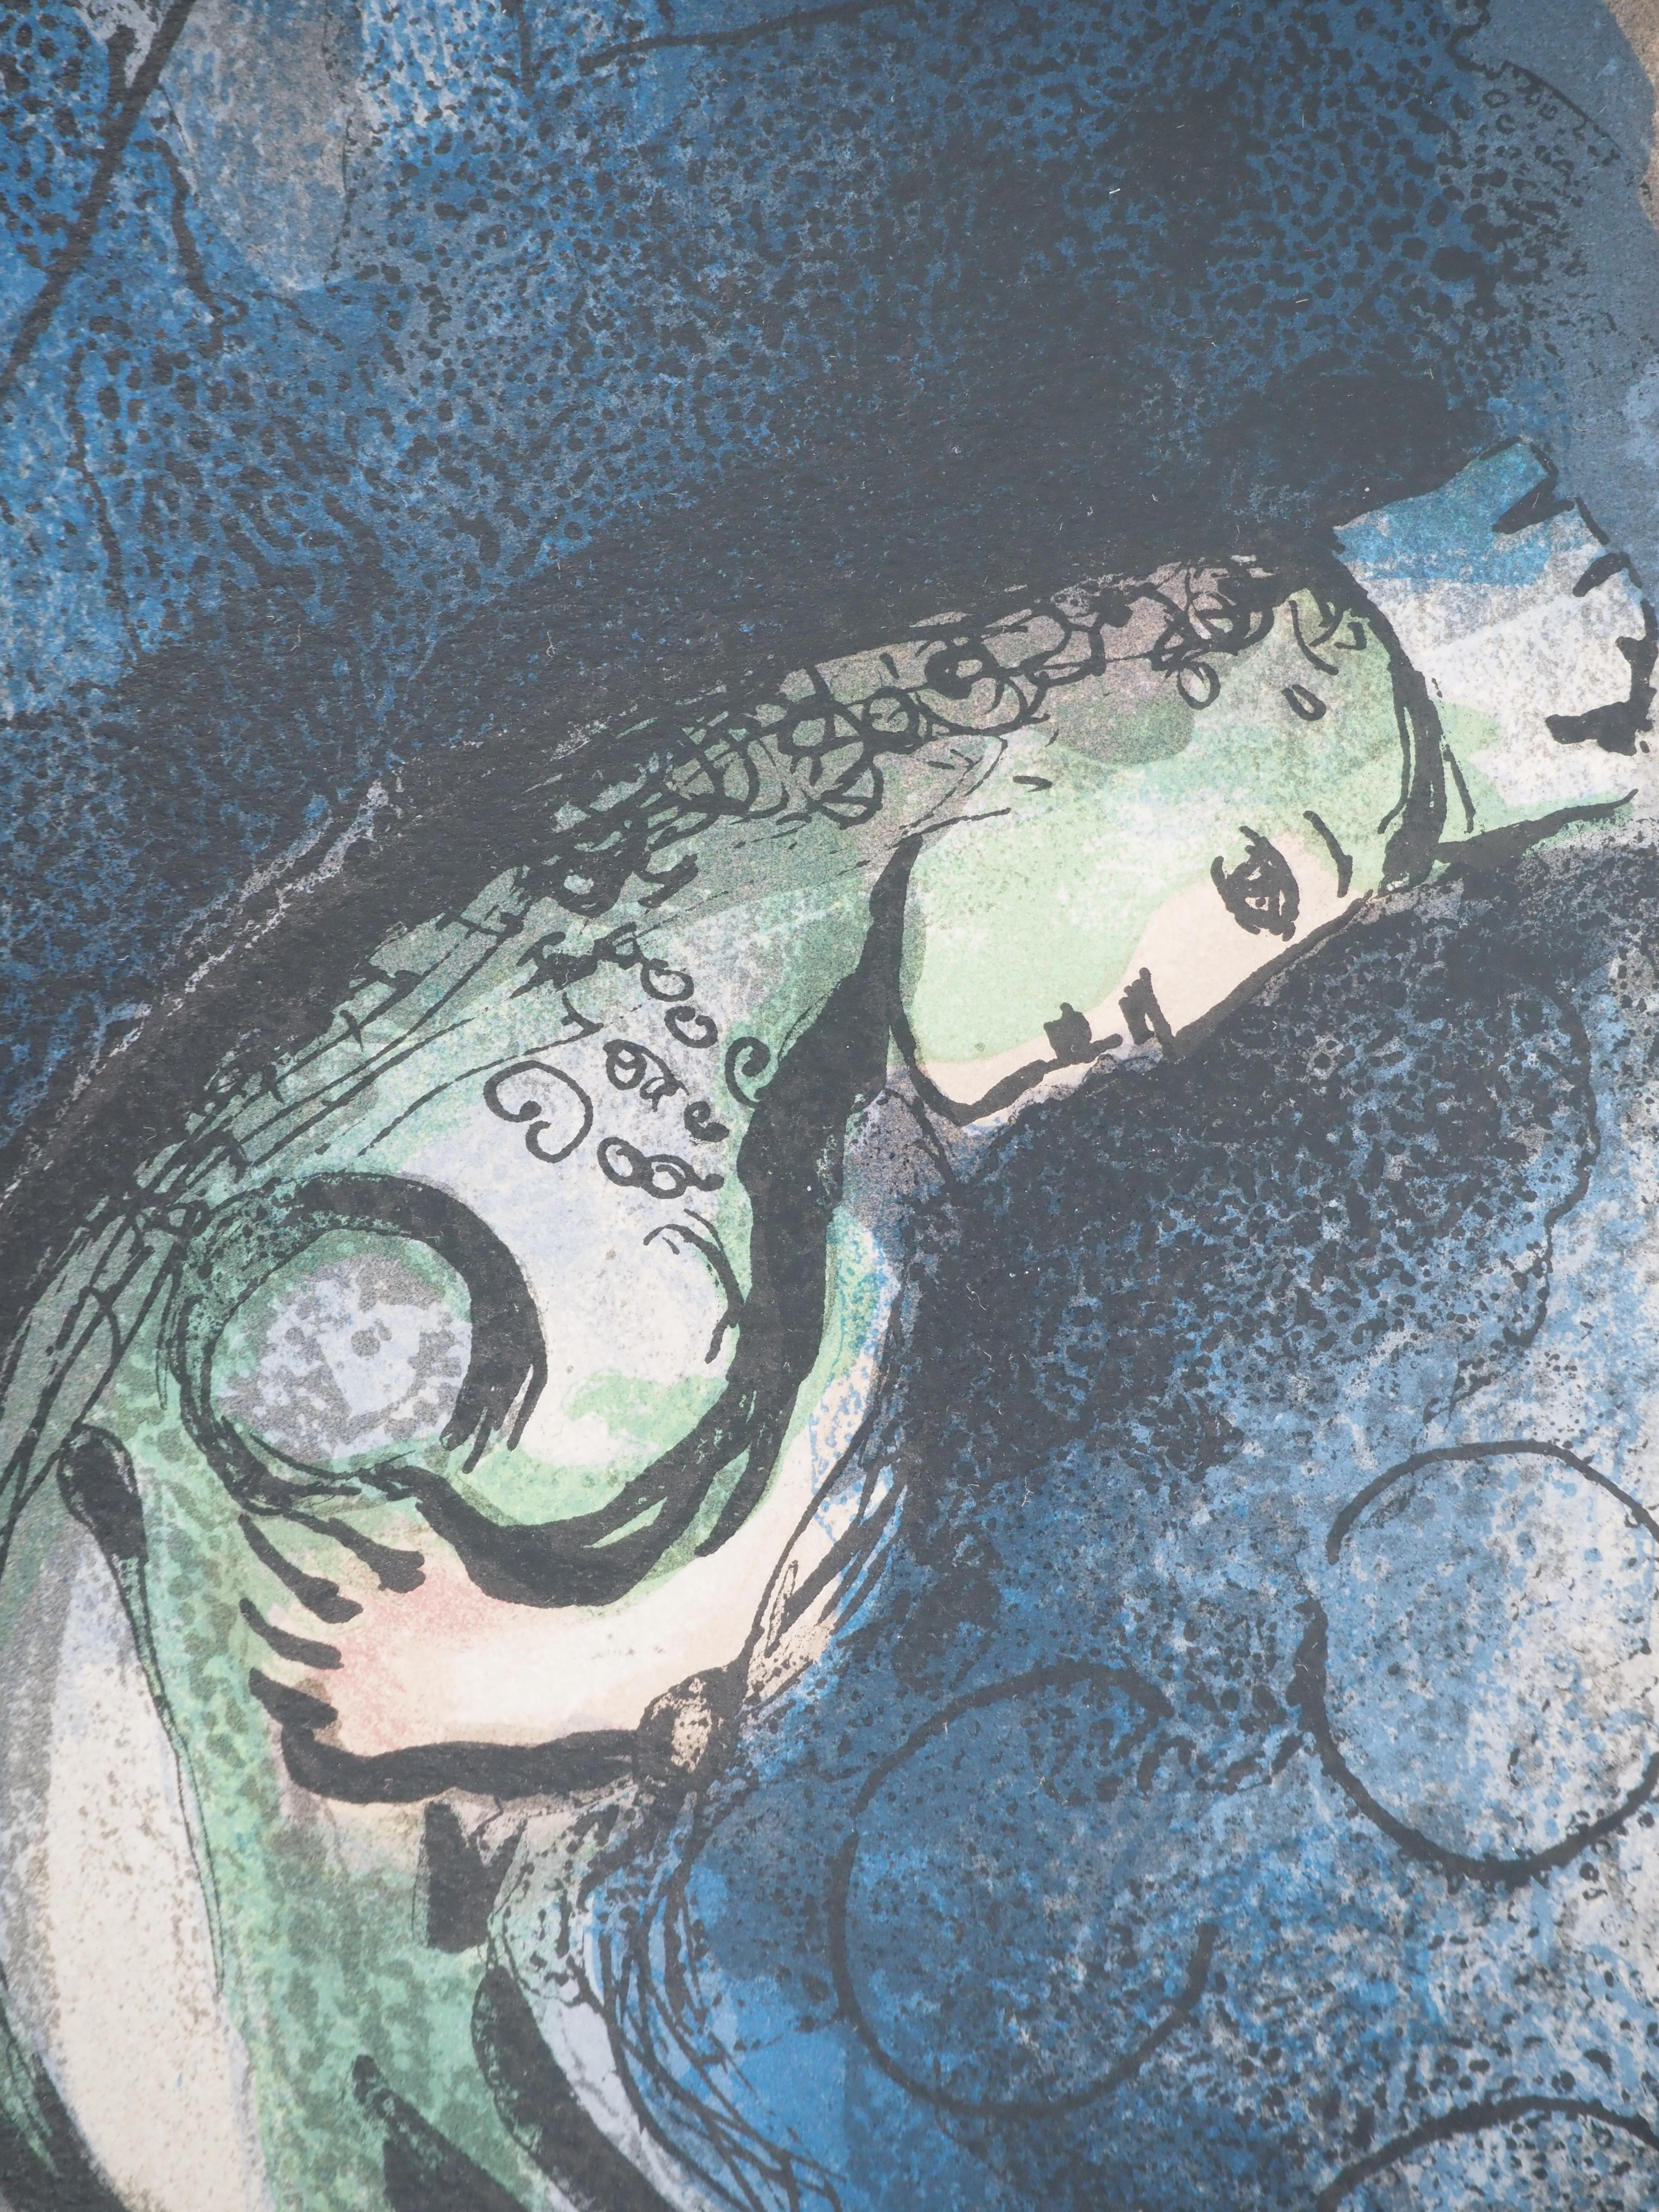 Marc Chagall (1887-1985) 
La Bible, Vashyi Chassed away
Lithographie originale (Atelier Daeger) 
Sur papier 36 x 26.5 cm (c. 14.2 x 10.2 in)
Deuxième illustration au dos, voir photo n°6 (Mourlot #274) 

RÉFÉRENCE : 
Catalogue raisonné Chagall